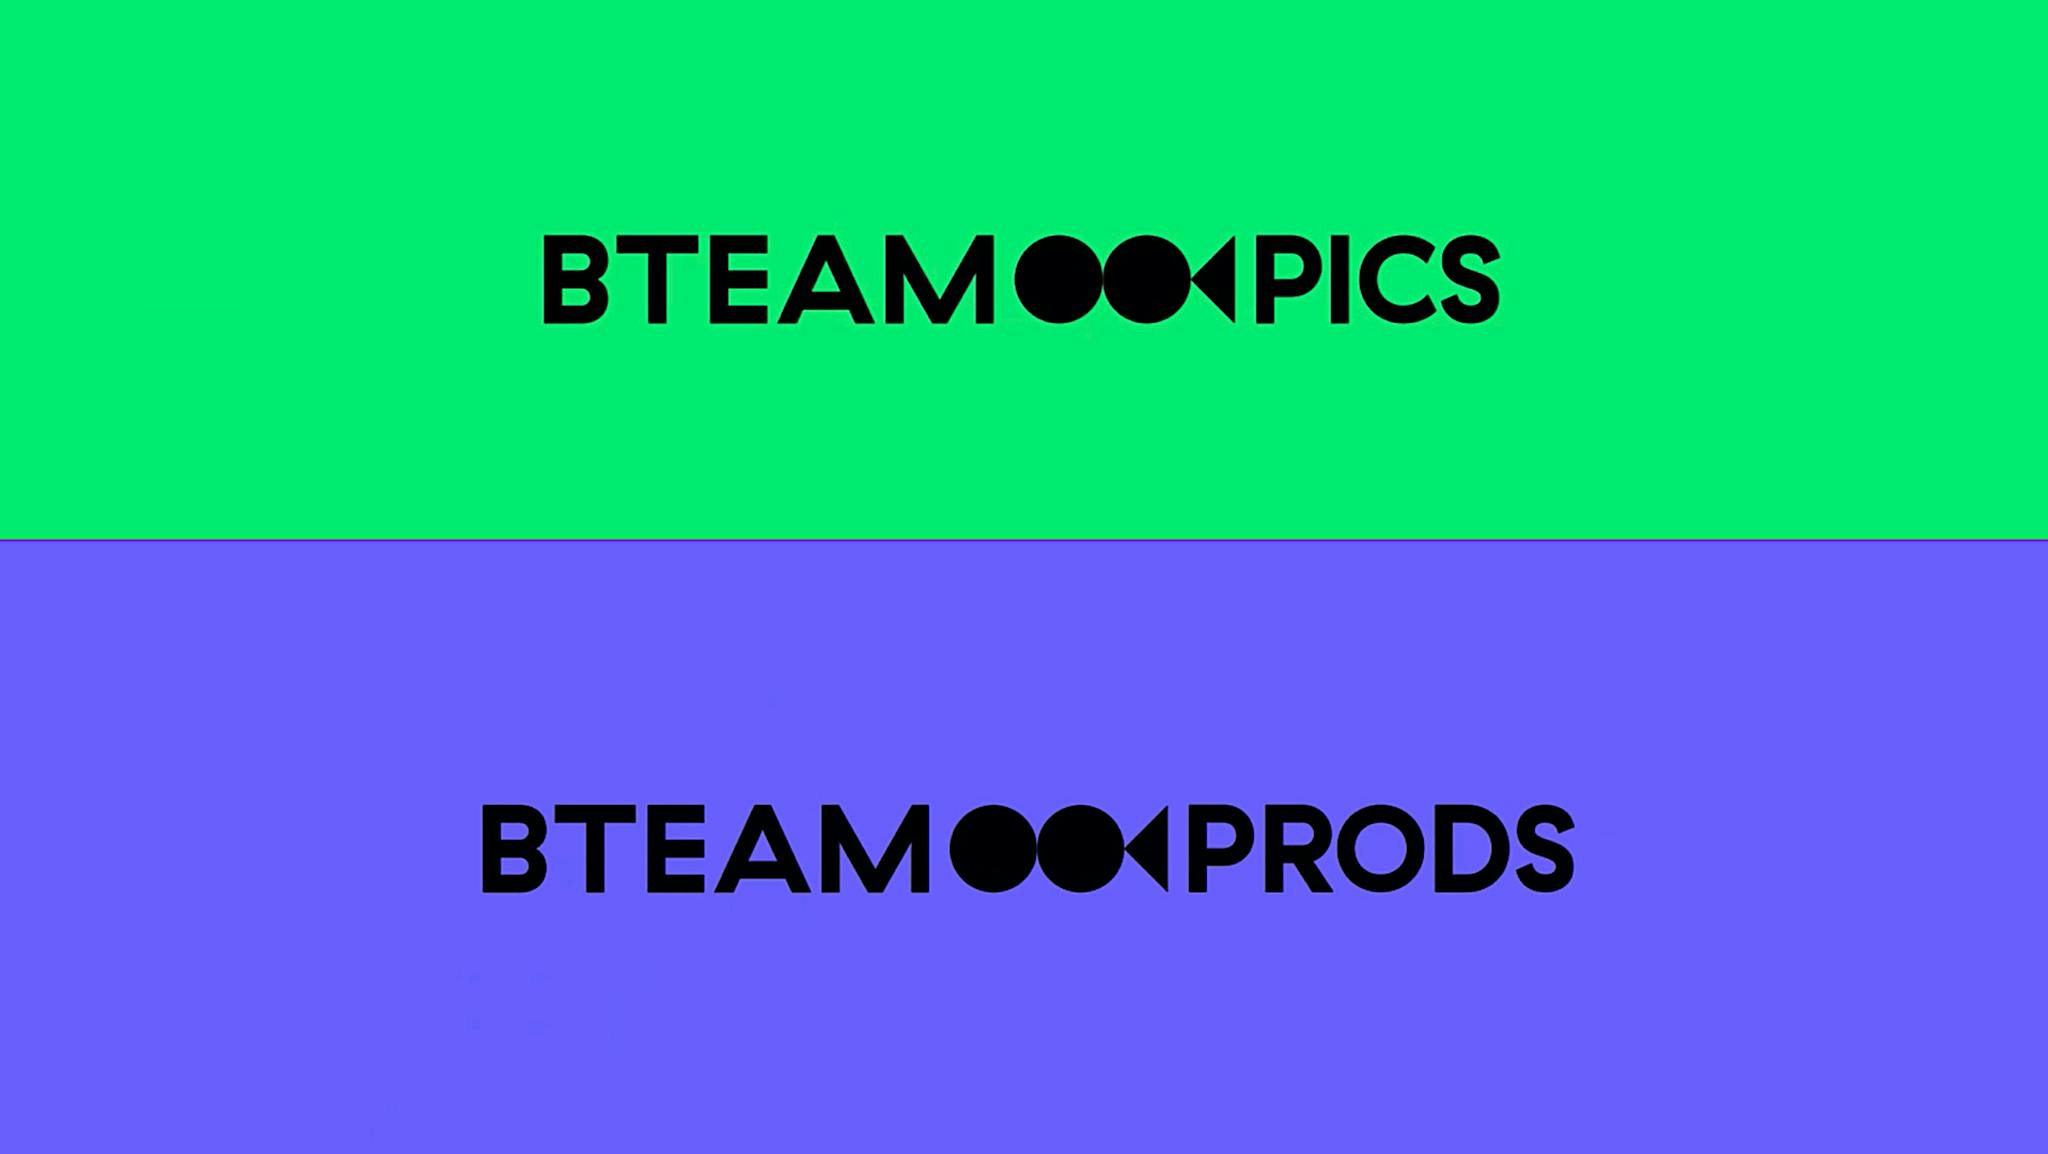 BTeam Pictures divide su marca en 'BTeam Pics' para la distribución y 'BTeam Prods' para la producción